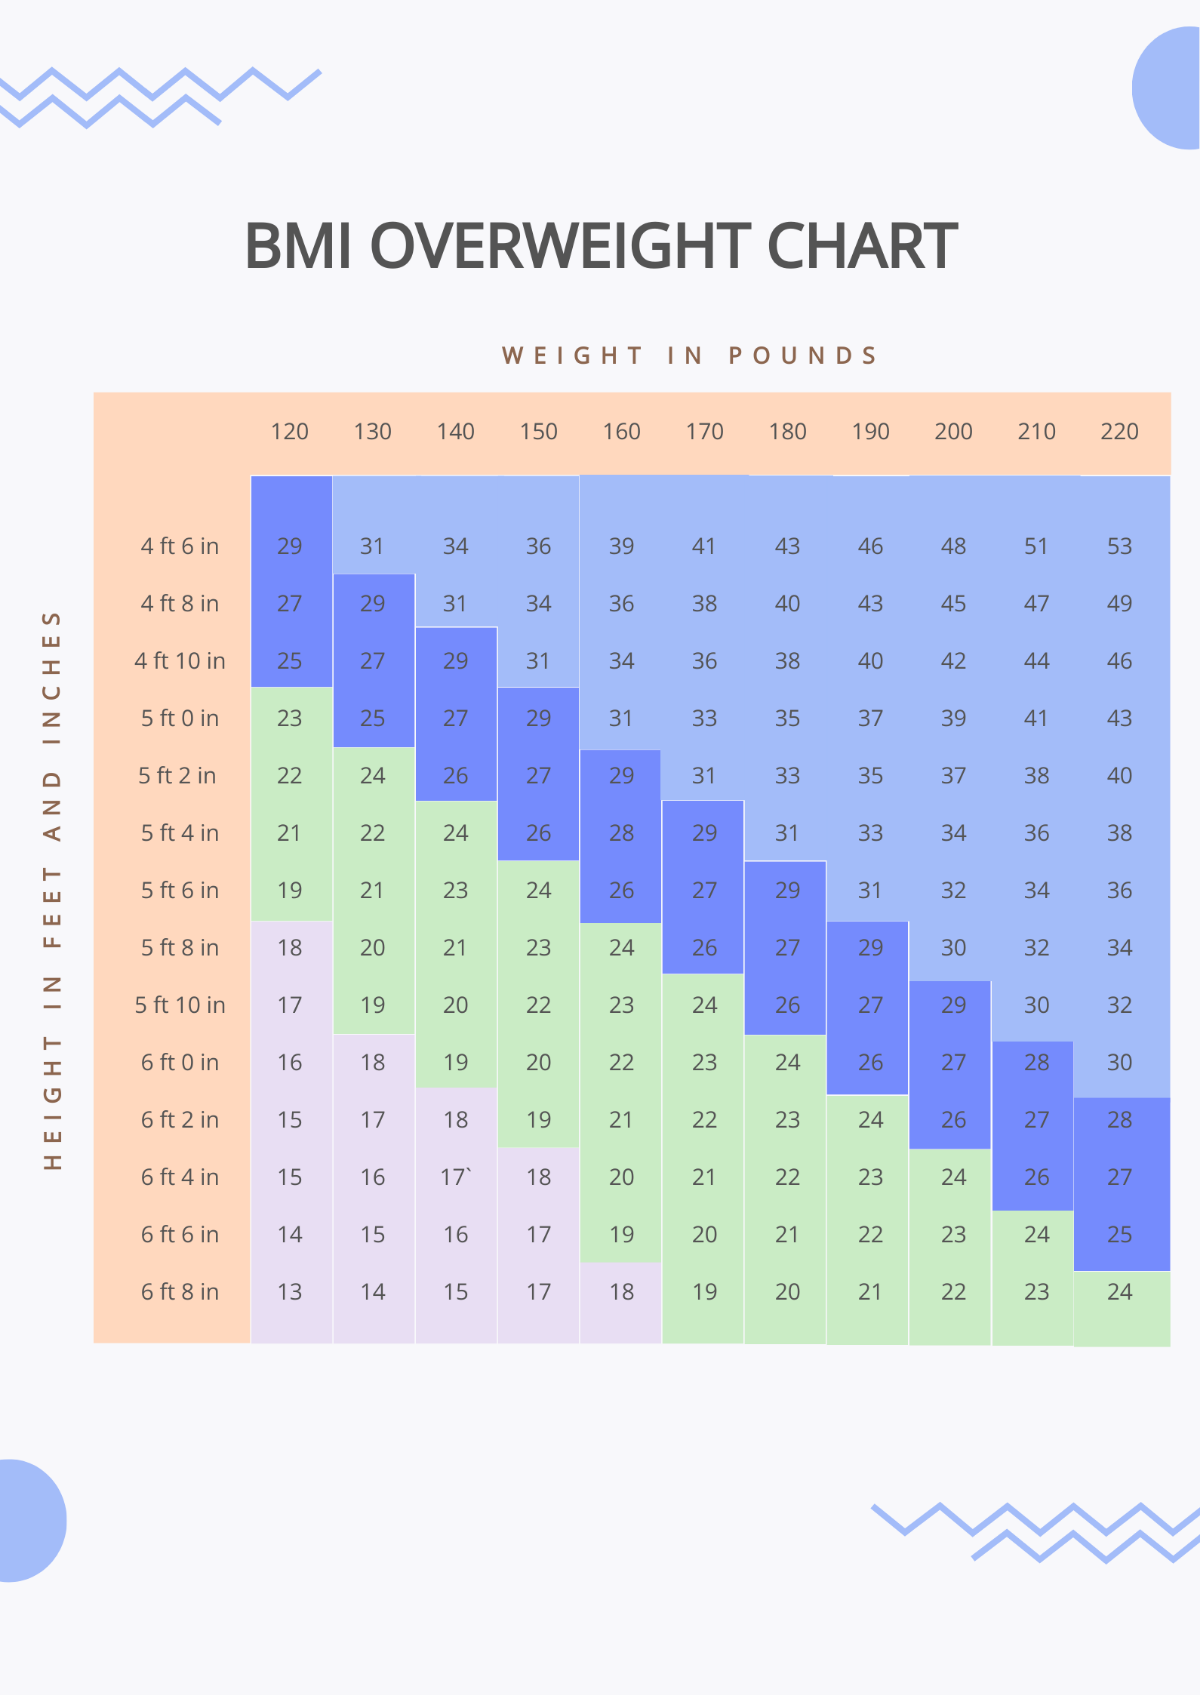 BMI Overweight Chart Template